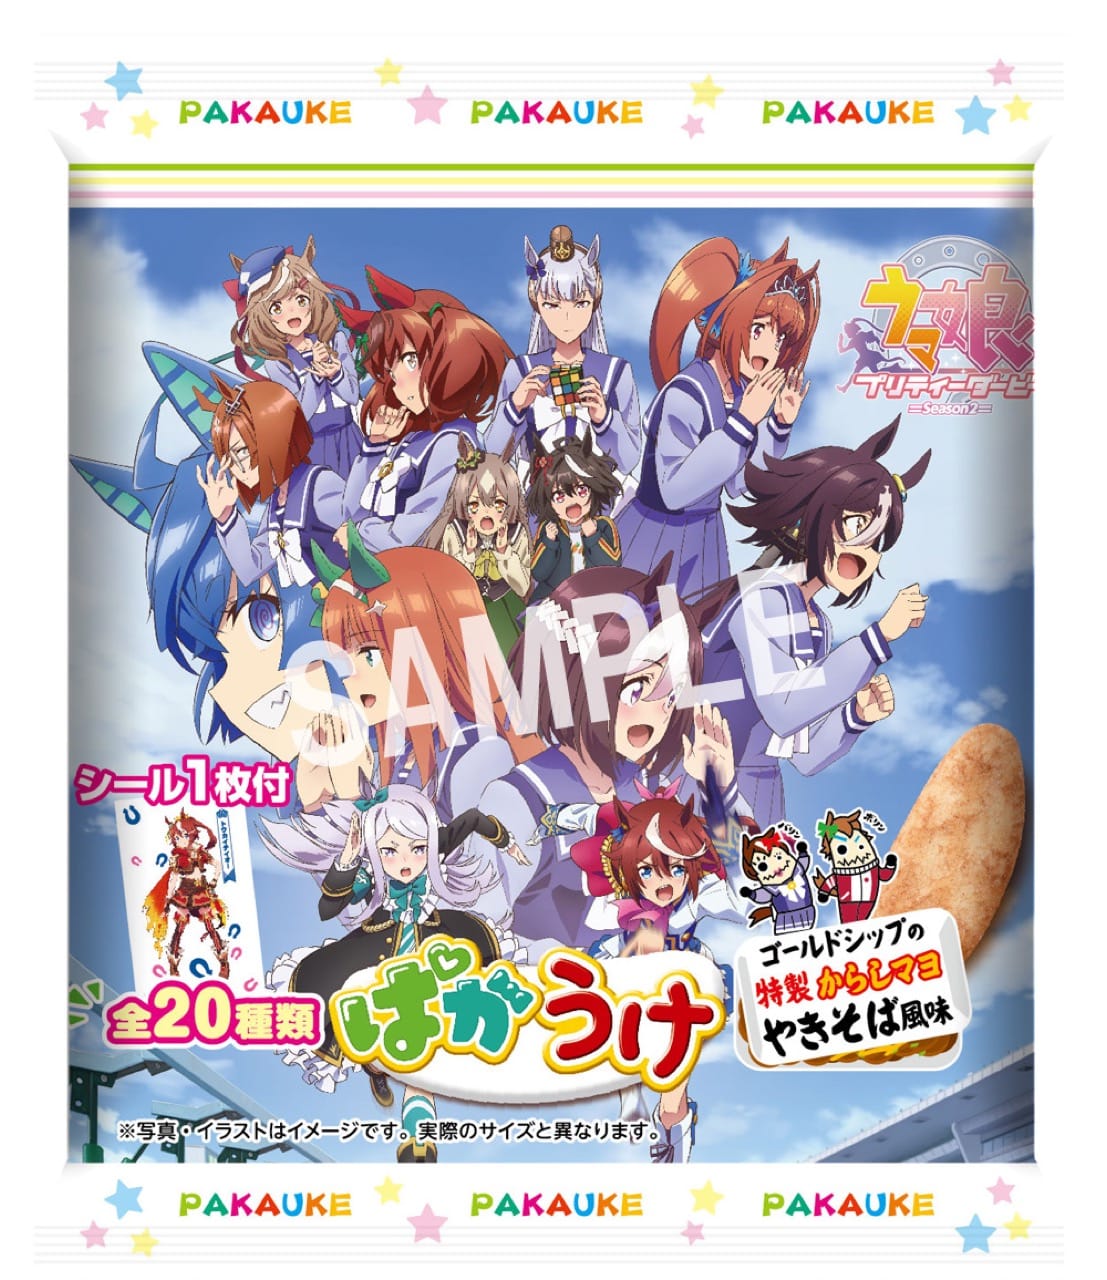 ウマ娘 Season2 × ばかうけ コラボ商品「ぱかうけ」10月25日より発売!